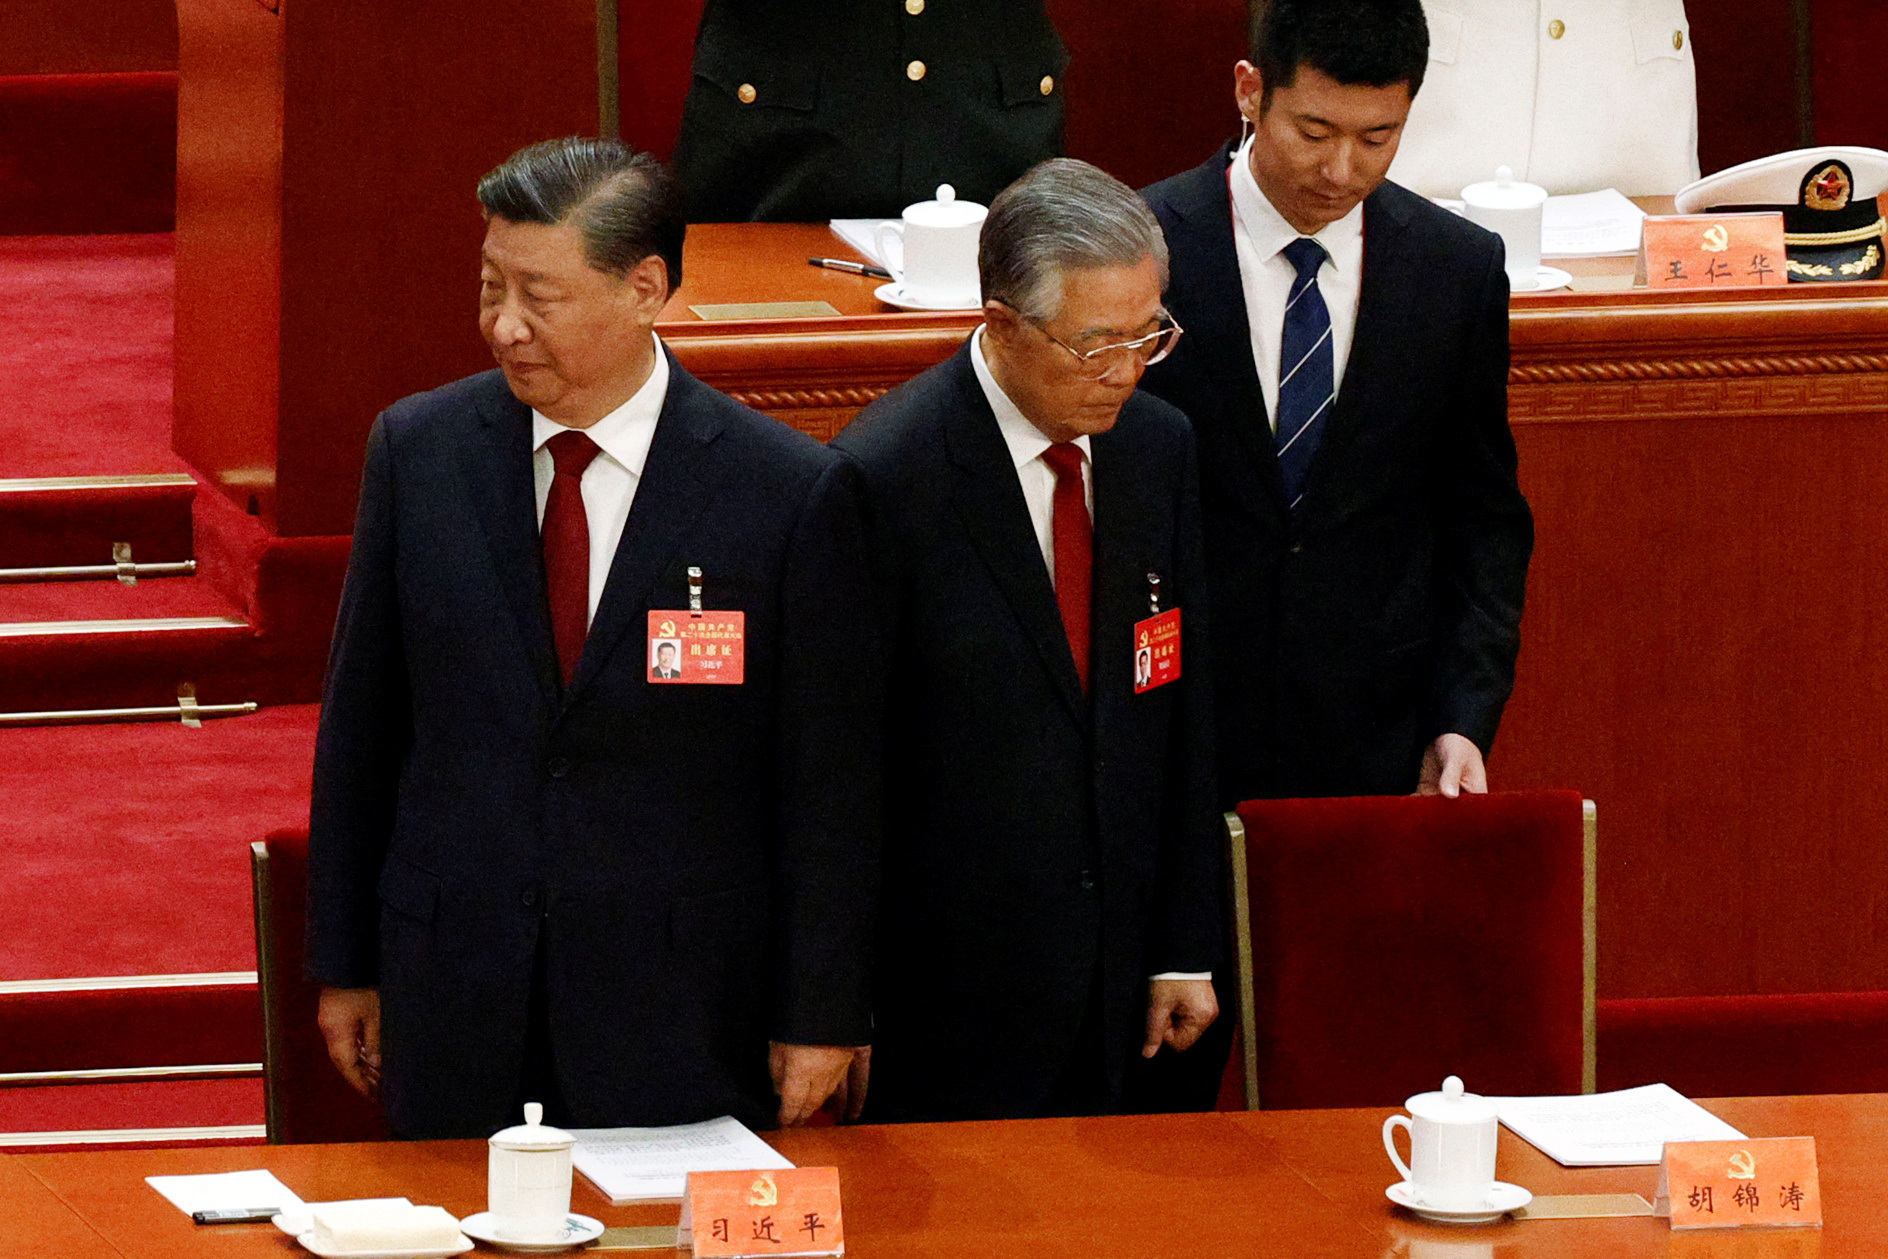 El jefe del régimen chino, Xi Jinping, y su antecesor, Hu Jintao